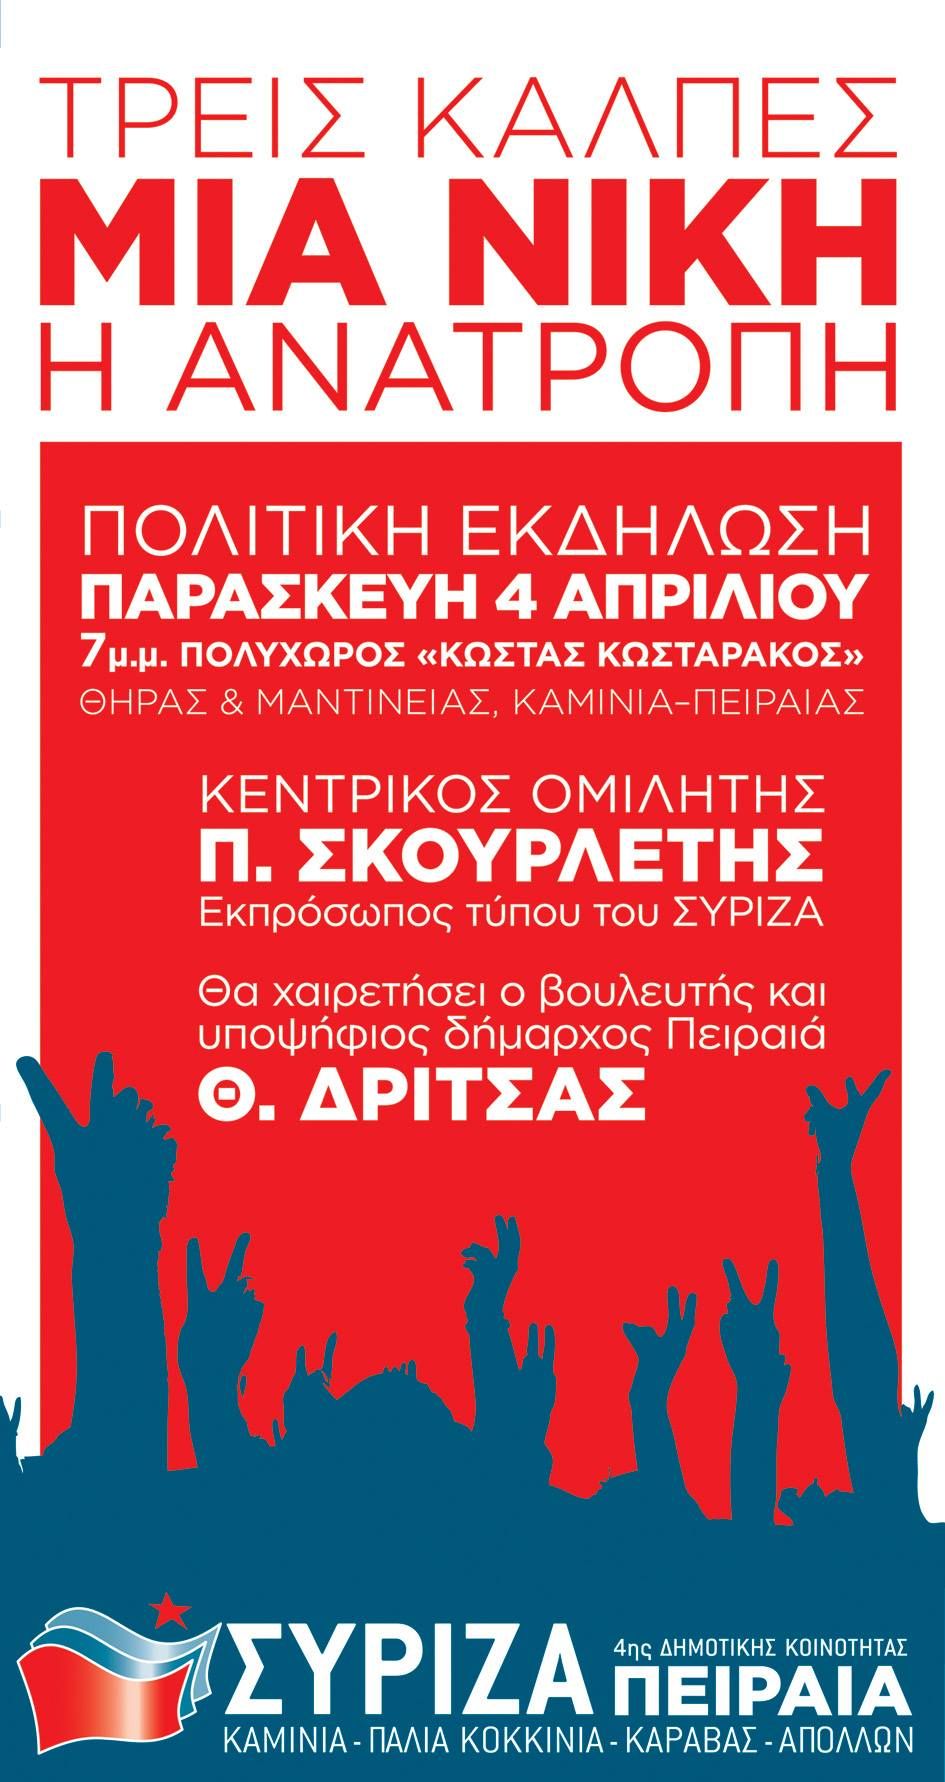 Εκδήλωση ΣΥΡΙΖΑ 4ης Δημοτικής Κοινότητας ΠΕΙΡΑΙΑ